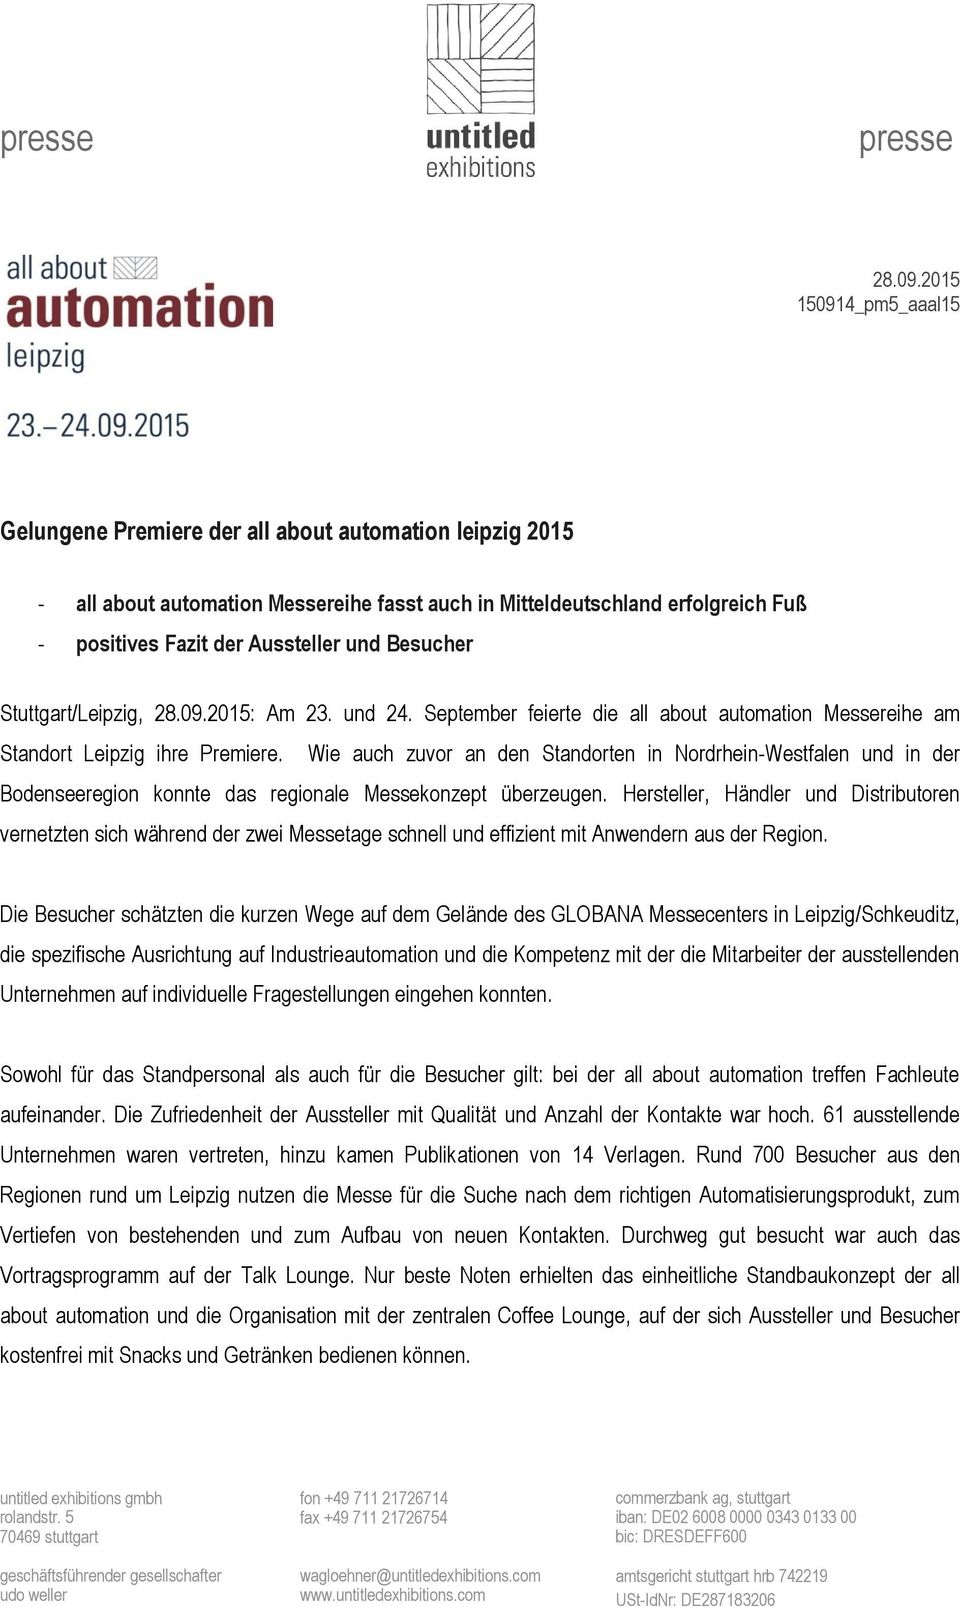 Besucher Stuttgart/Leipzig, 2015: Am 23. und 24. September feierte die all about automation Messereihe am Standort Leipzig ihre Premiere.